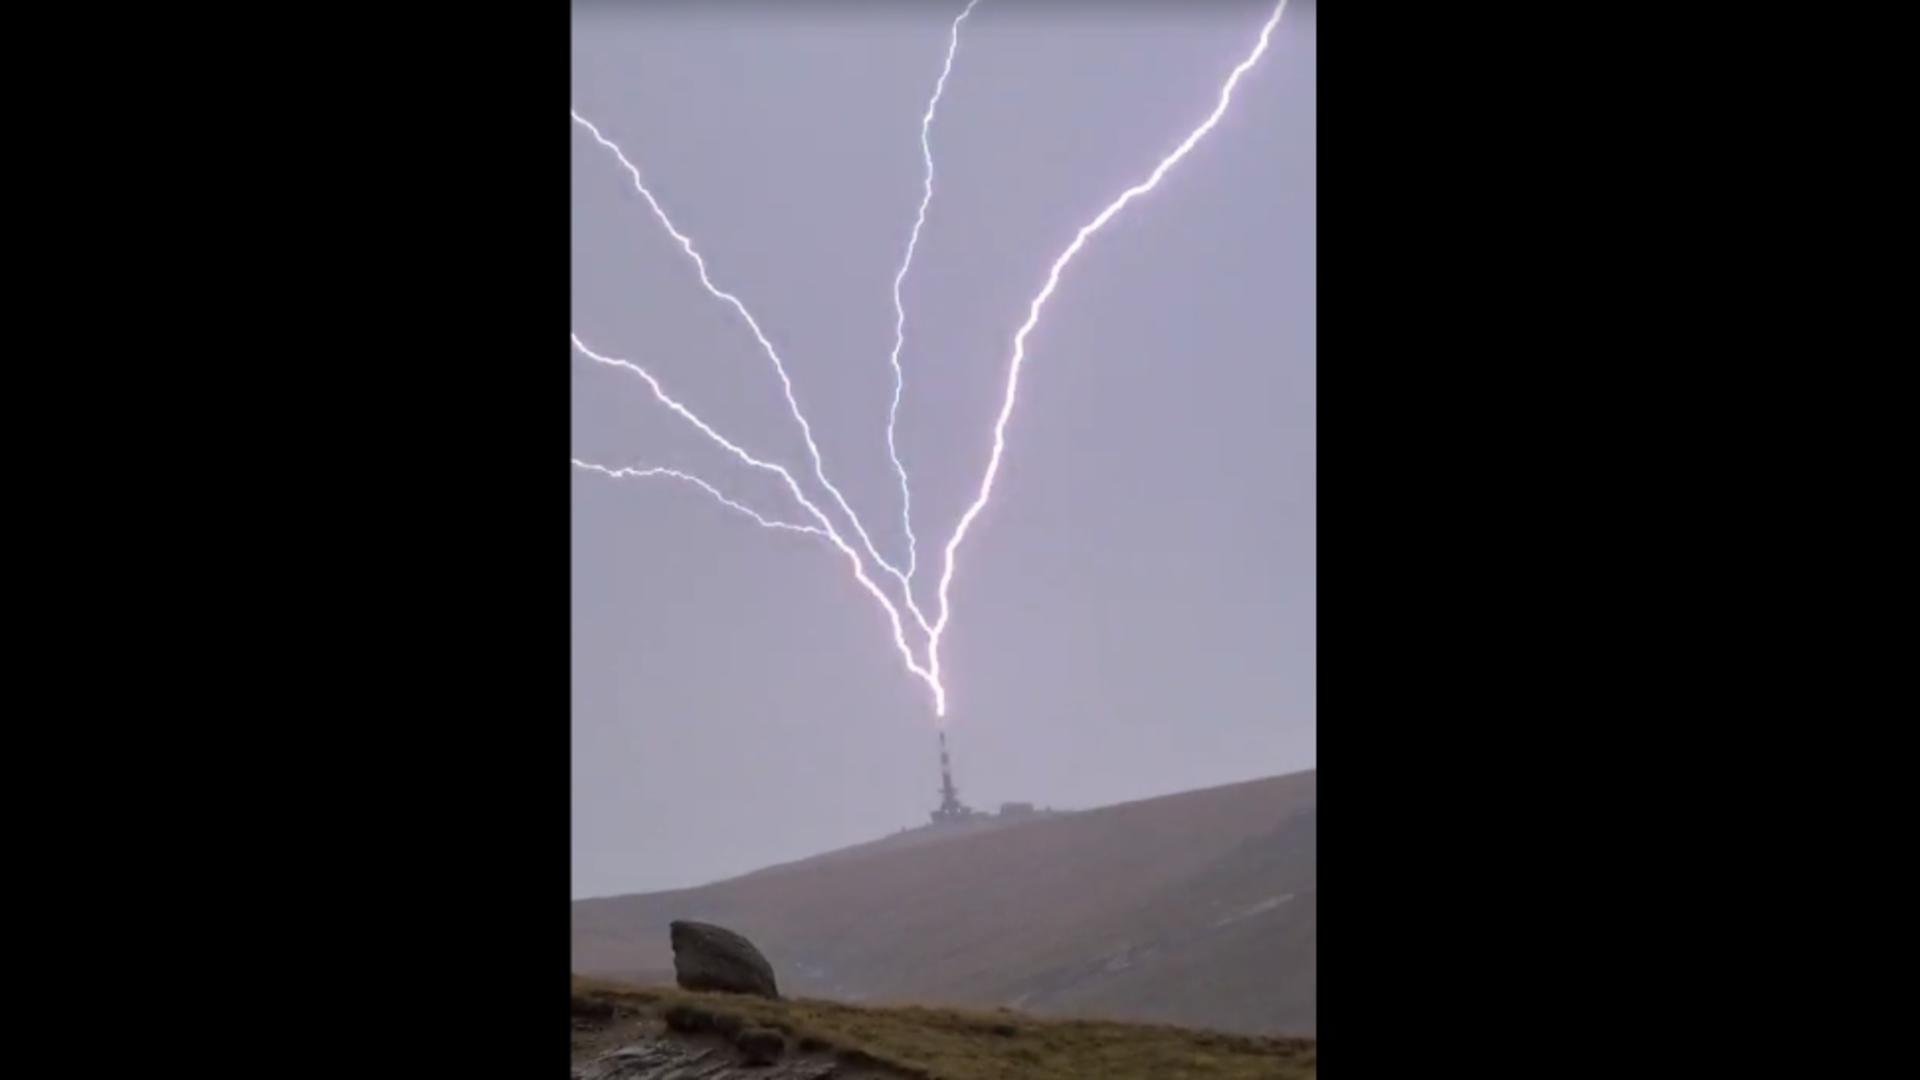 S-a aprins văzduhul în Bucegi: fenomenul „upward lightning” a creat un spectacol impresionant deasupra Vârfului Coștila/ Foto: Facebook